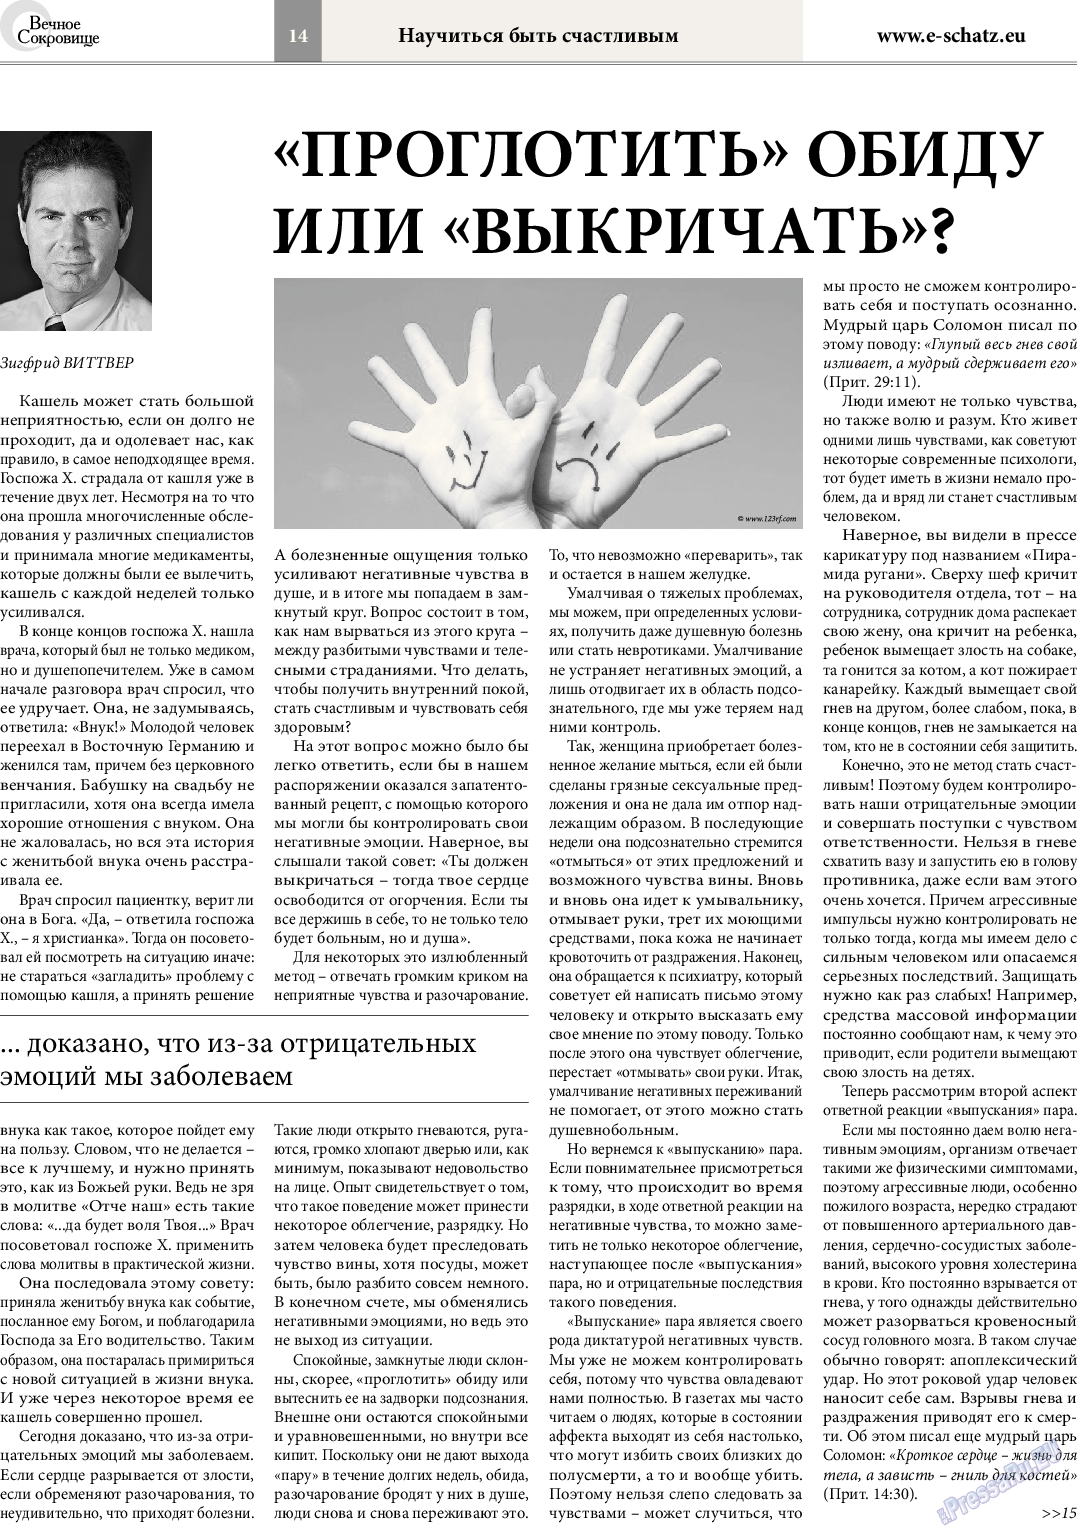 Вечное сокровище, газета. 2014 №4 стр.14